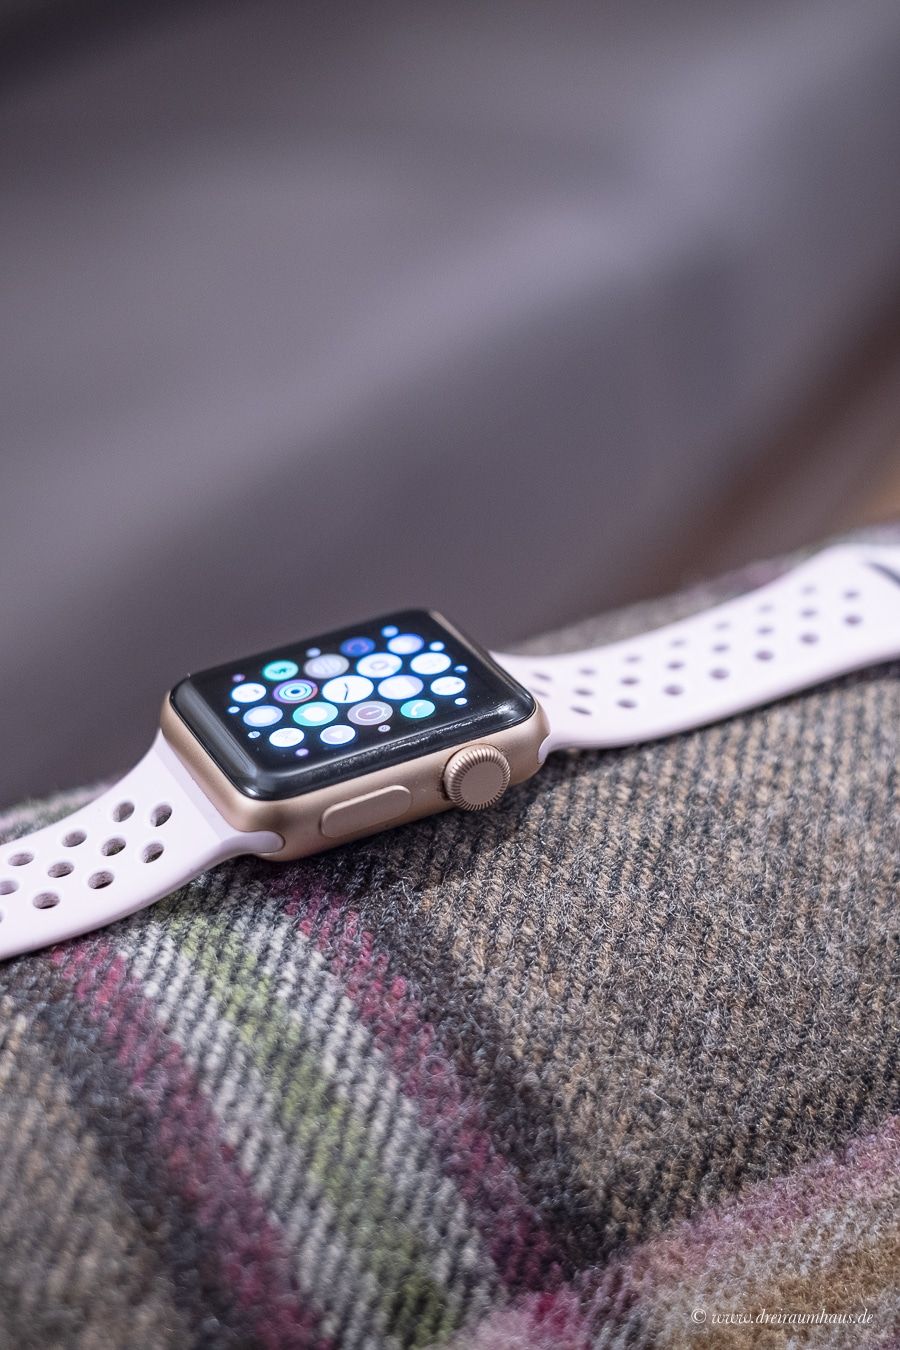 Heute geht es um Technik fÃ¼r Frauen in meiner Blogreihe #MeineTippsfÃ¼rFrauen - Macht die Apple Watch wirklich Sinn? Ist die Smartwatch nur Lifestyle?